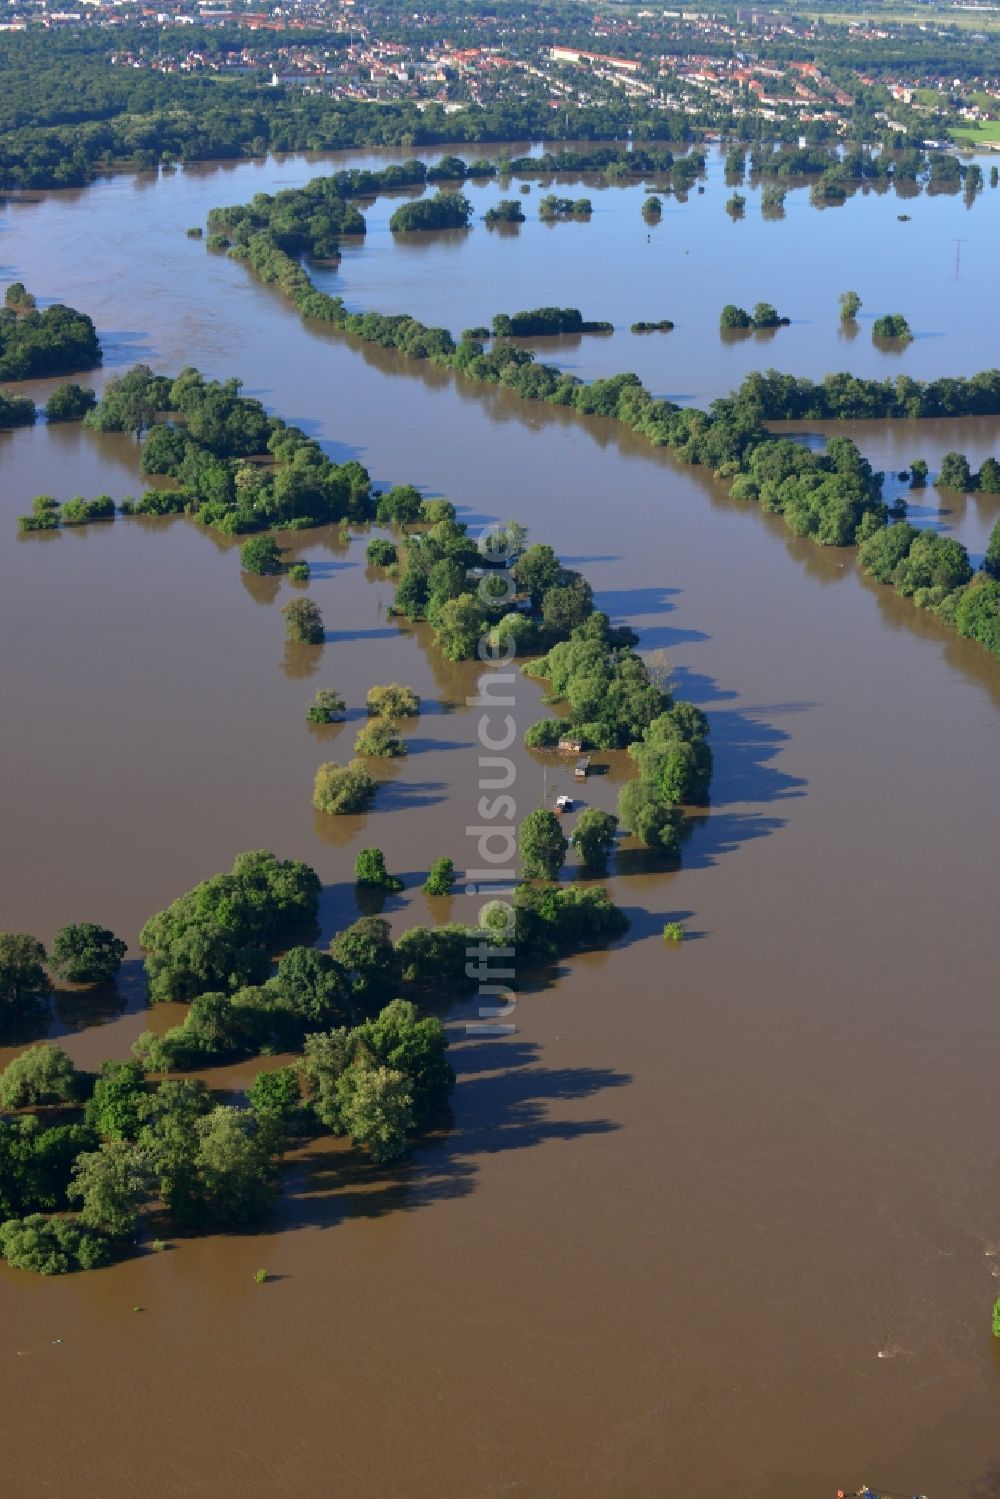 Luftbild Dessau-Roßlau - Hochwasser Pegel - Situation durch Überschwemmung und Übertritt der Ufer der Elbe bei Dessau-Roßlau im Bundesland Sachsen-Anhalt